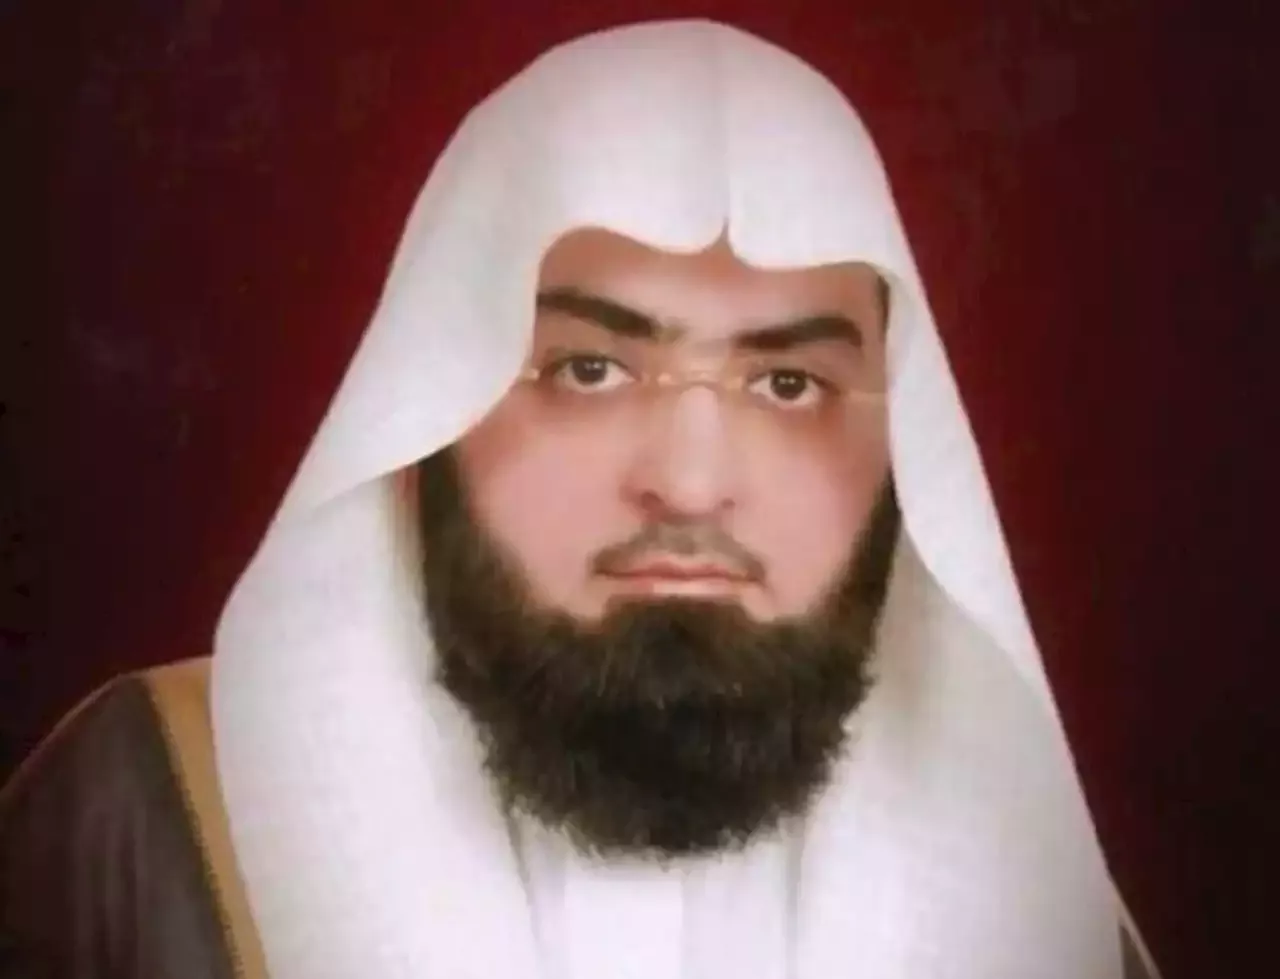 وفاة الشيخ محمود خليل قارئ إمام مسجد القبلتين في المدينة المنورة - صحيفة تواصل الالكترونية